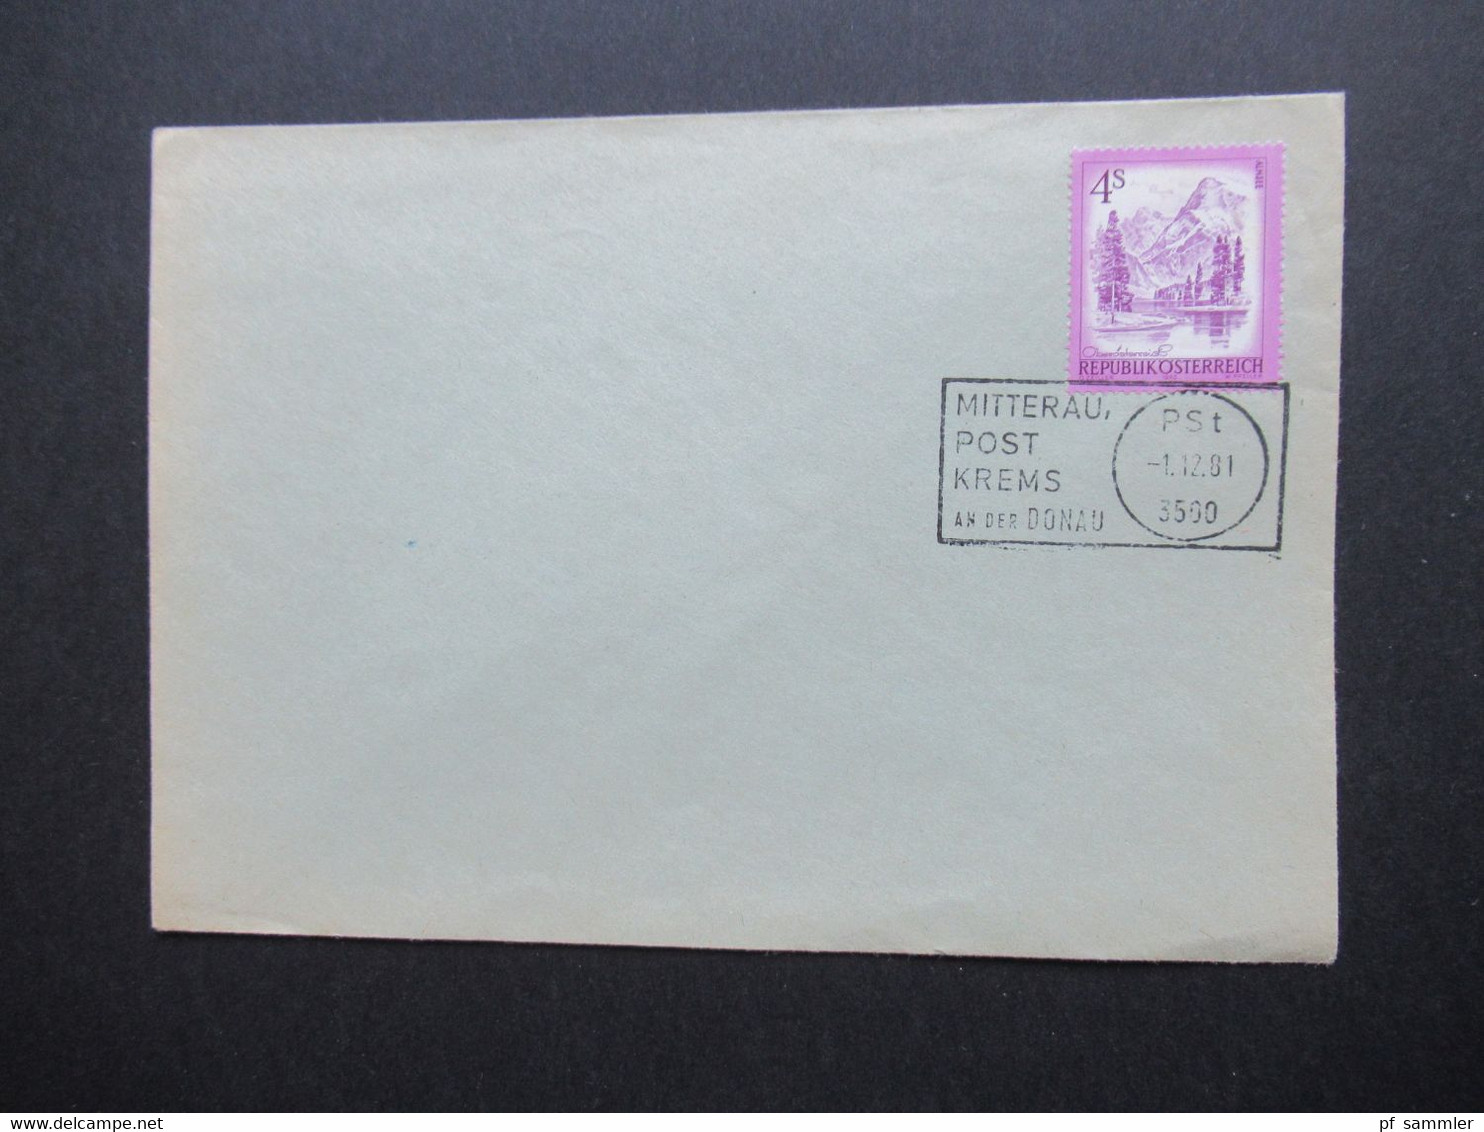 Österreich 1981 Umschlag Mit Stempel Mitterau Post Krems An Der Donau PSt 1.12.81 3500 - Lettres & Documents